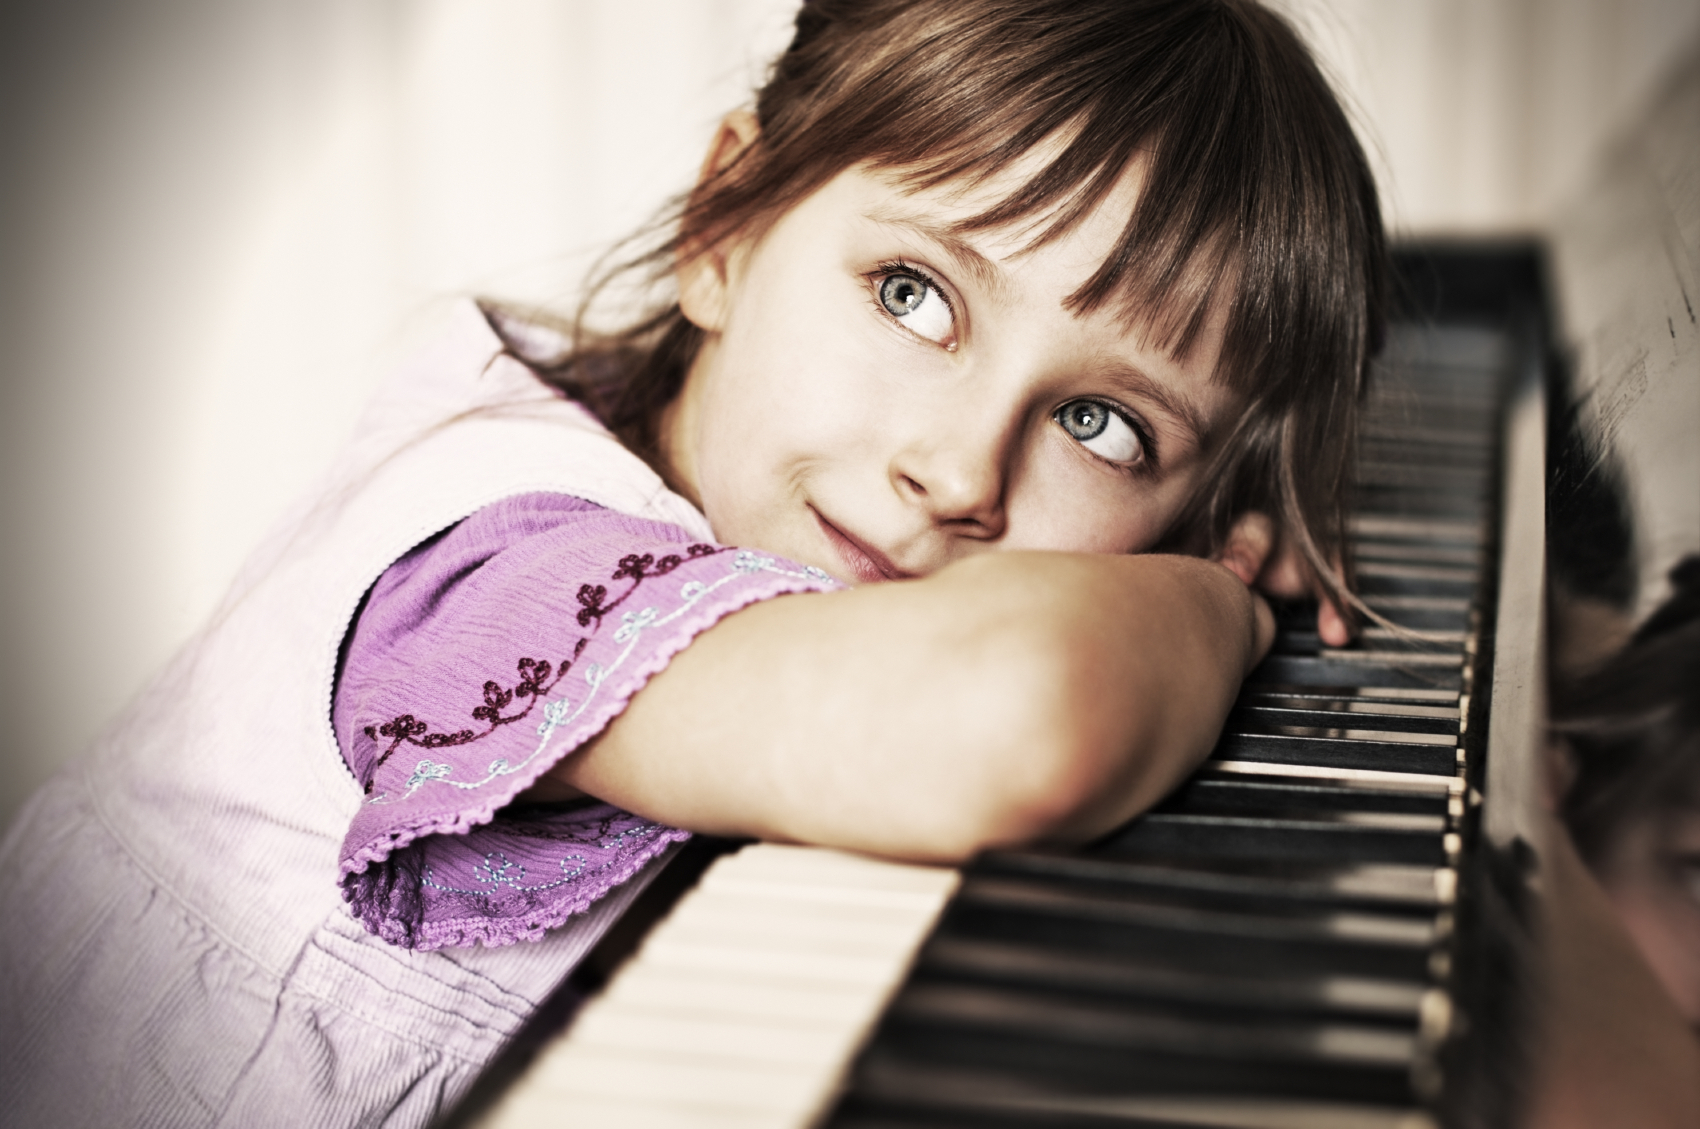 Послушать песню играть. Фортепиано для детей. Пианино для детей. Детская фотосессия с пианино. Девочка в музыкальной школе.